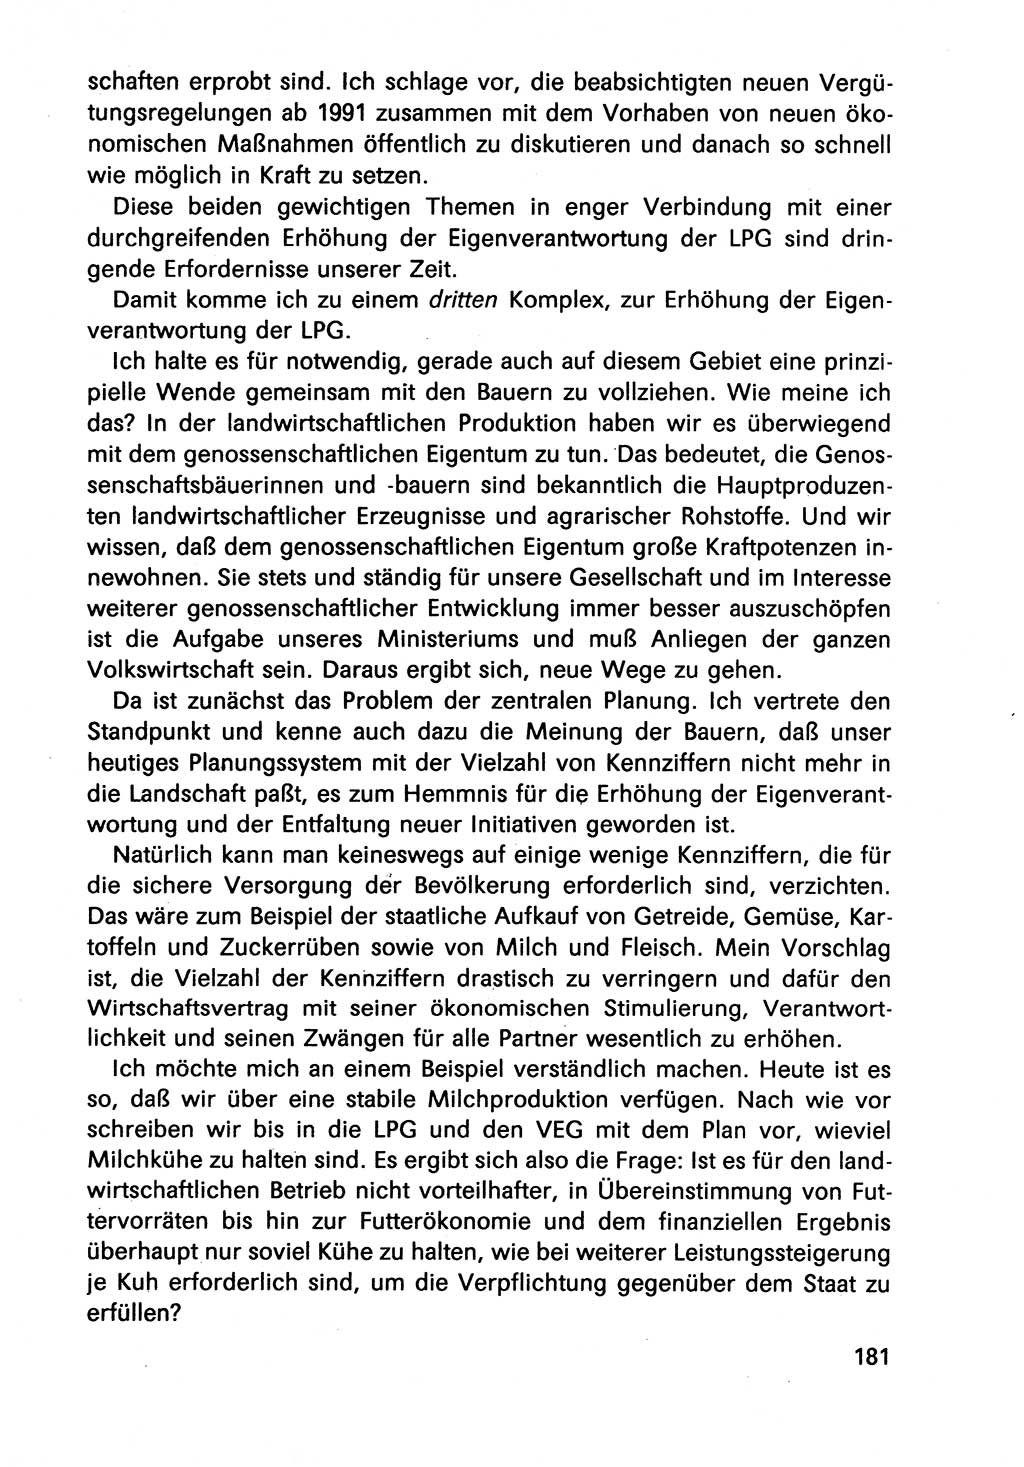 Diskussionsbeiträge, 10. Tagung des ZK (Zentralkomitee) der SED (Sozialistische Einheitspartei Deutschlands) [Deutsche Demokratische Republik (DDR)] 1989, Seite 181 (Disk.-Beitr. 10. Tg. ZK SED DDR 1989, S. 181)